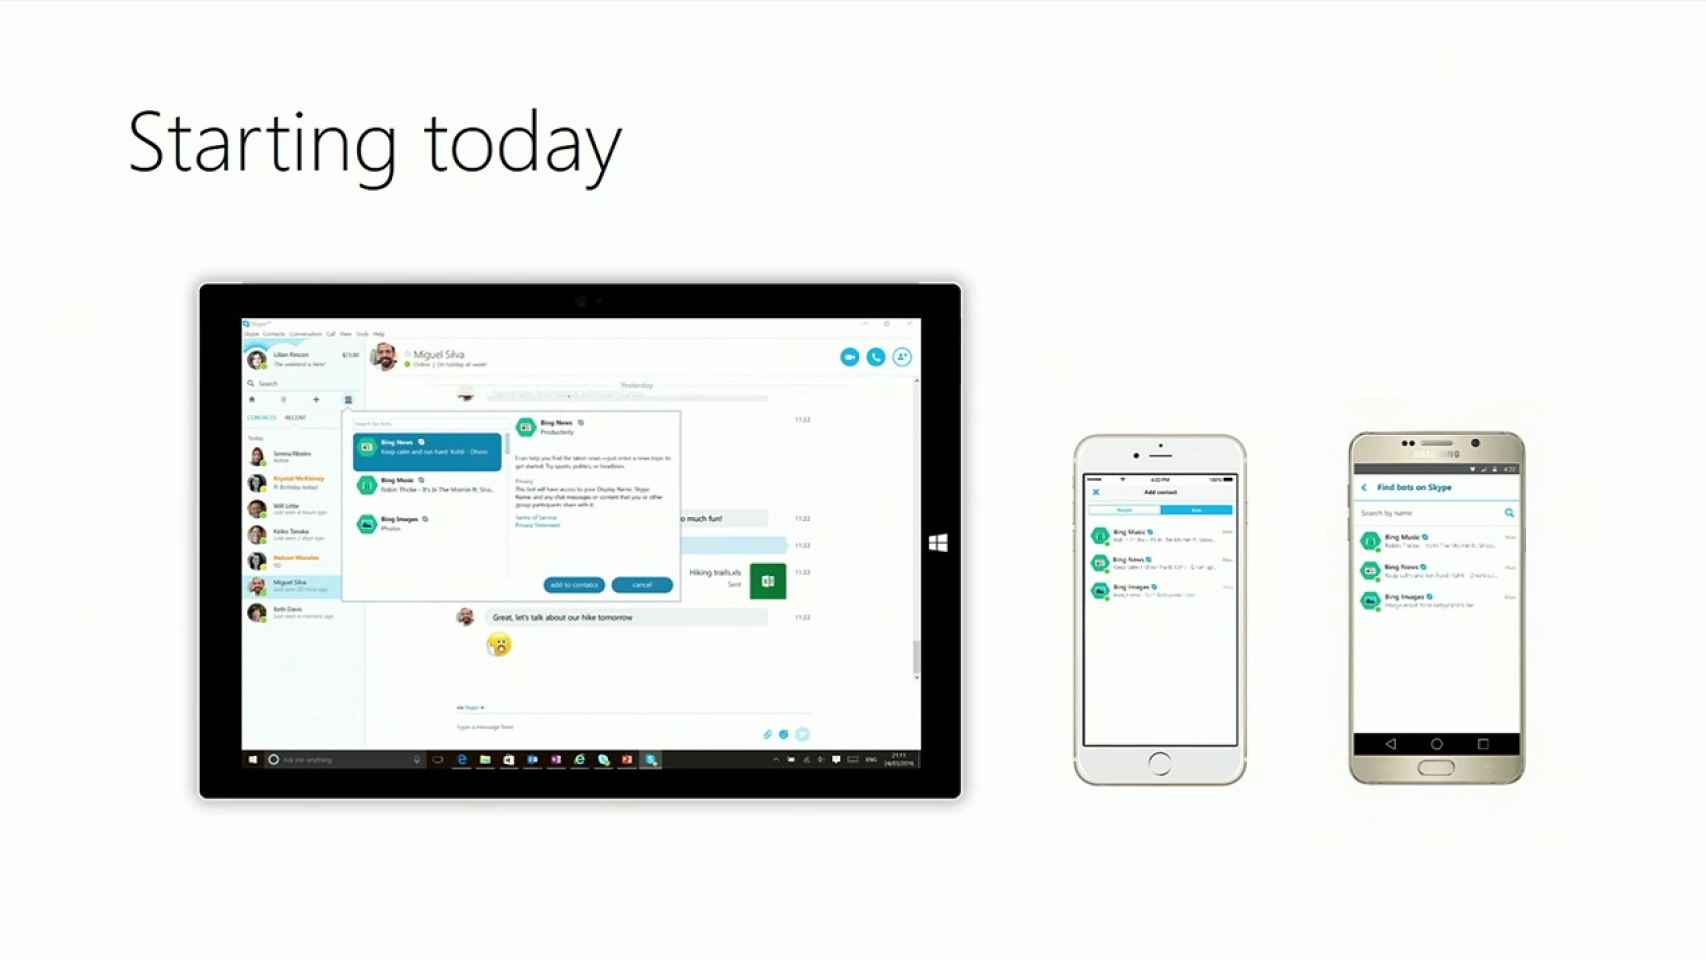 Skype evoluciona: integra Cortana y añade bots inteligentes